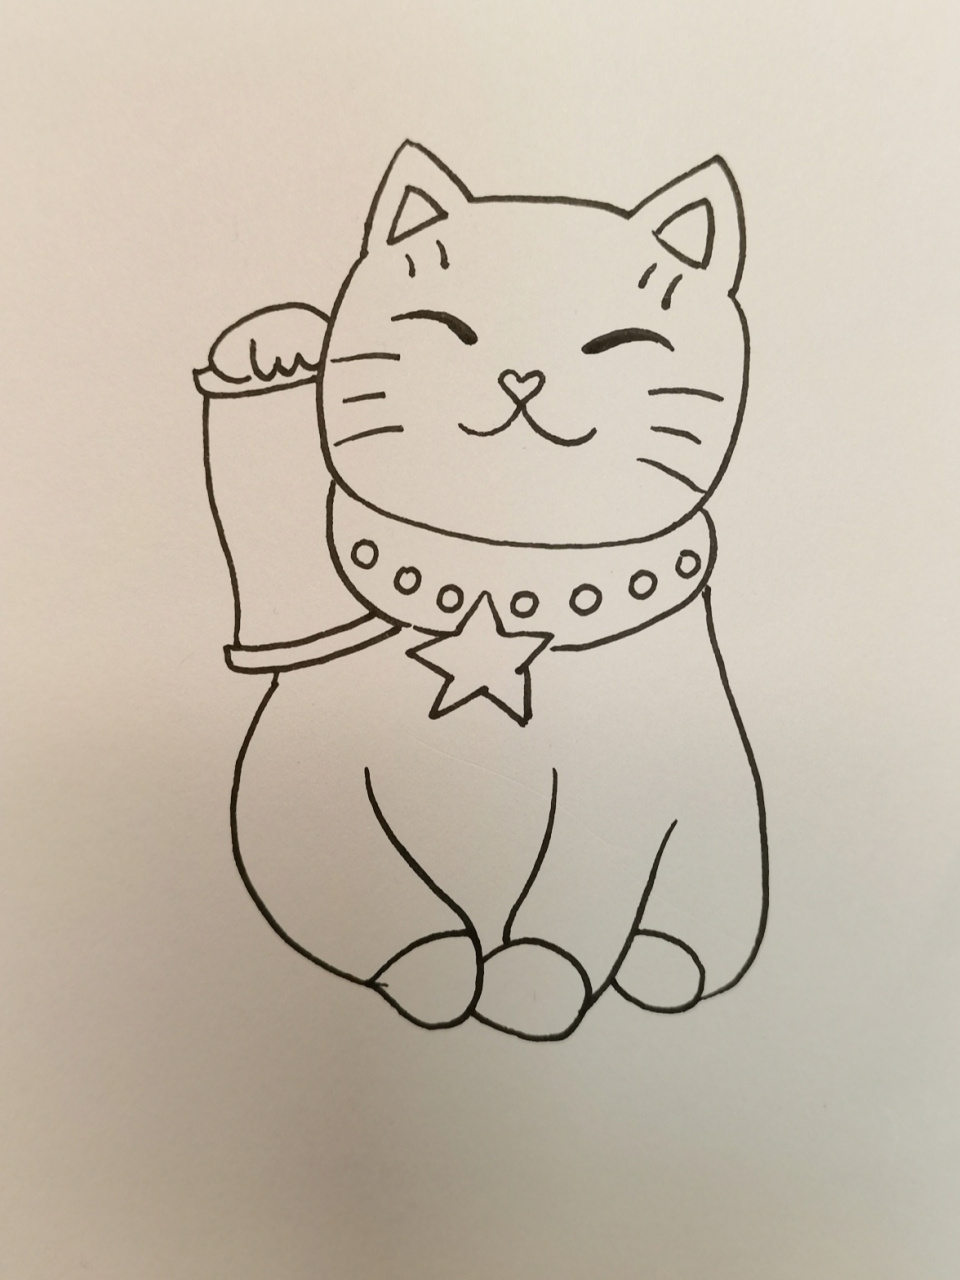 招财猫儿童画 招财猫是日本传统文化中常见的猫型偶像摆设,通常用陶瓷